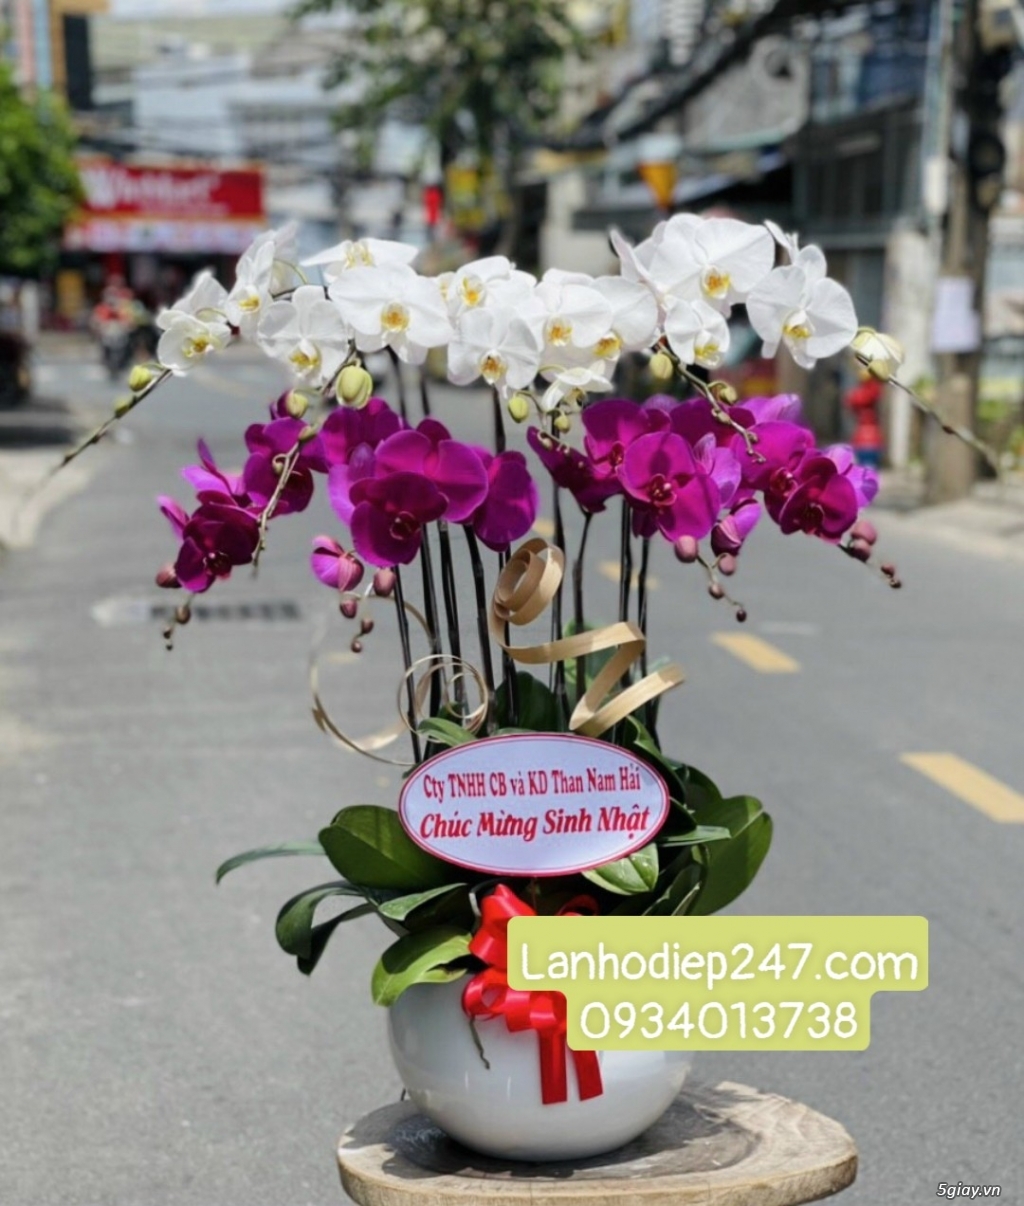 Shop Lan Hồ Điệp Cao Cấp tại Sài Gòn - Hoa Tươi 247 TPHCM 0934013738 - 2